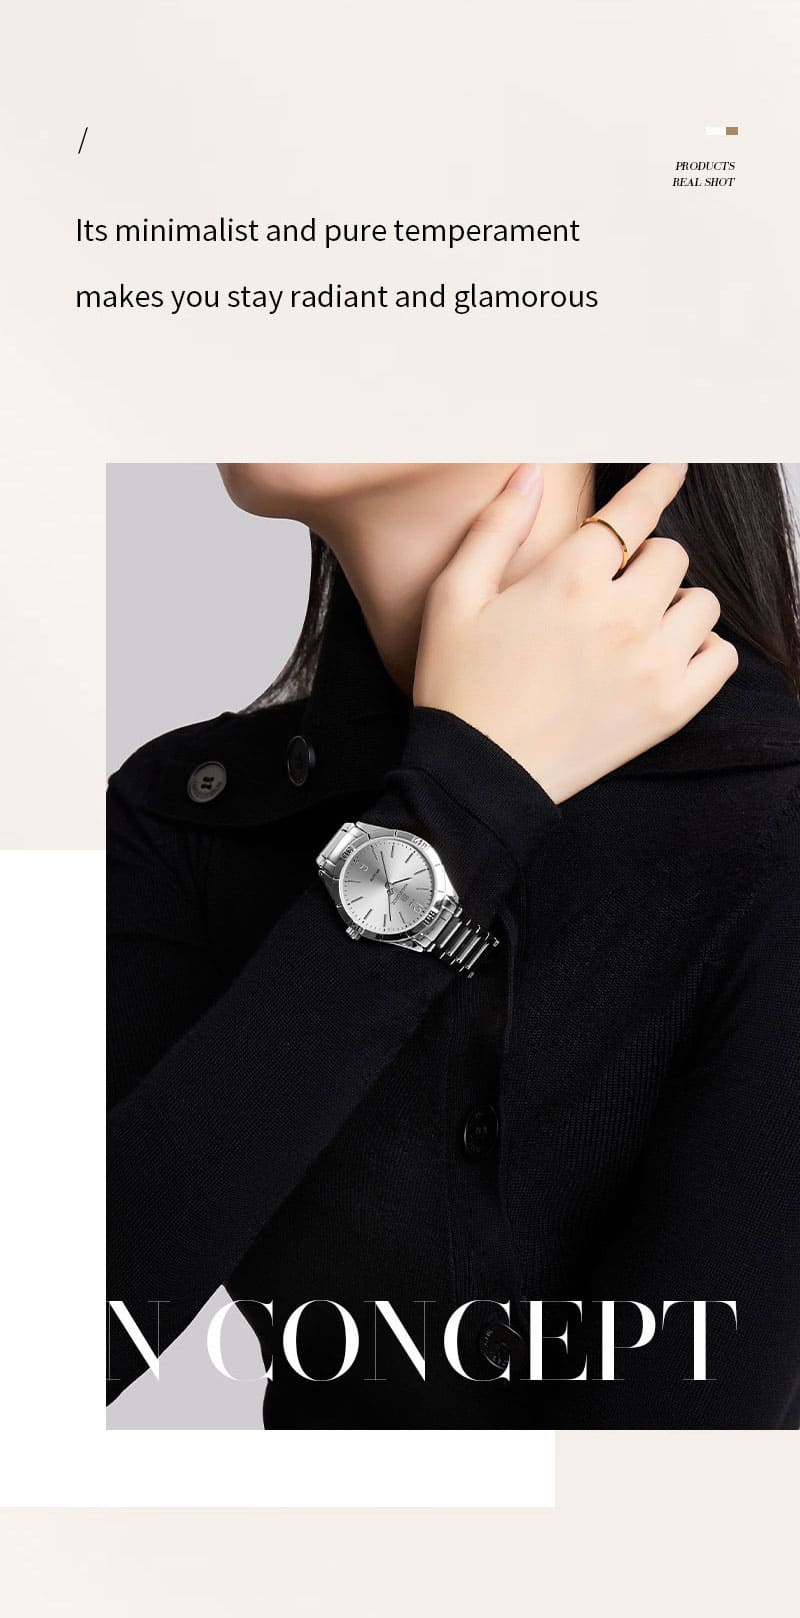 ساعة يد نافي فورس للنساء NF5029 S W | واتشز برايم